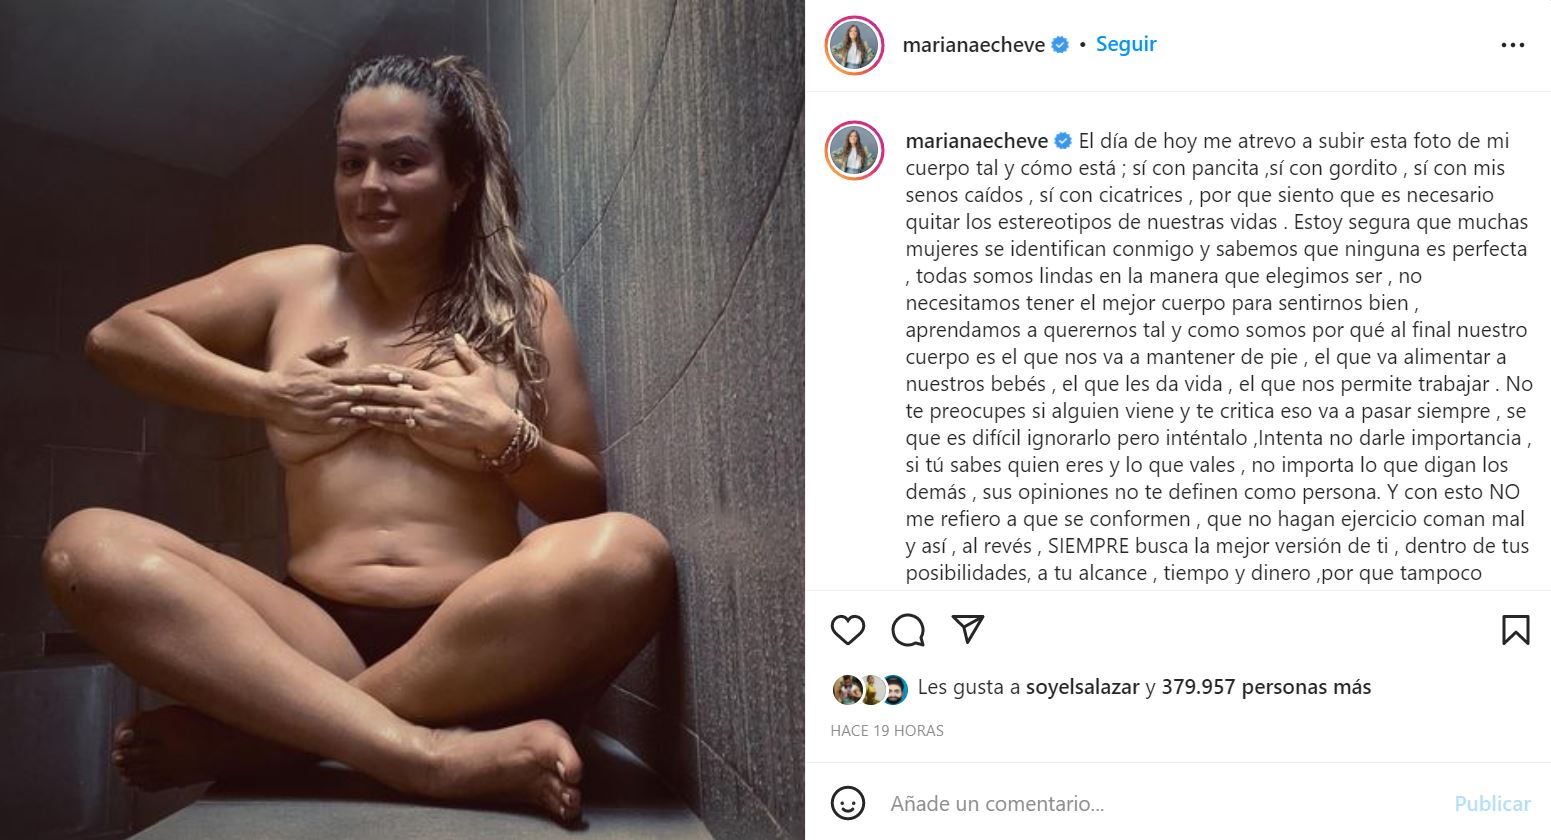 Mariana Echeverría posó al natural contra estereotipos: “Tu cuerpo es tu  hogar” - Infobae